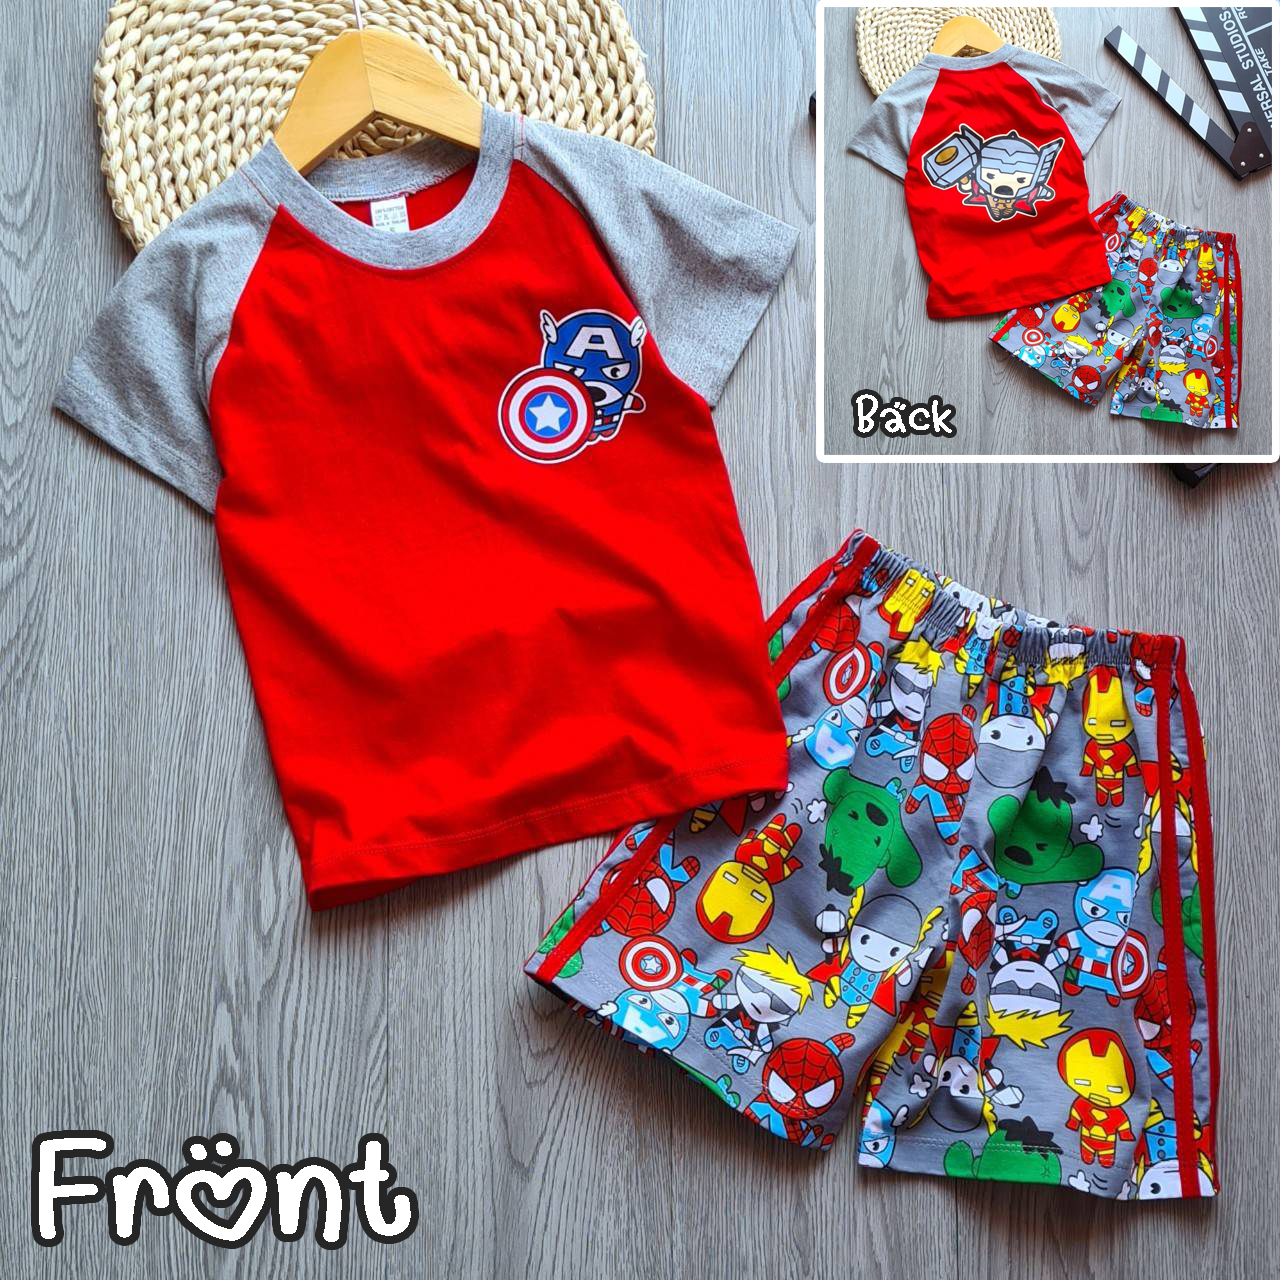 BeautyStudio [A0267] เสื้อผ้าเด็ก ชุดเด็ก เสื้อแขนสั้นสกรีนหน้า-หลัง+กางเกงขาสั้น ผ้าคอตตอน พิมพ์ลายซุปเปอร์ฮีโร่ โทนสีแดง-เทา (1 ชุด)